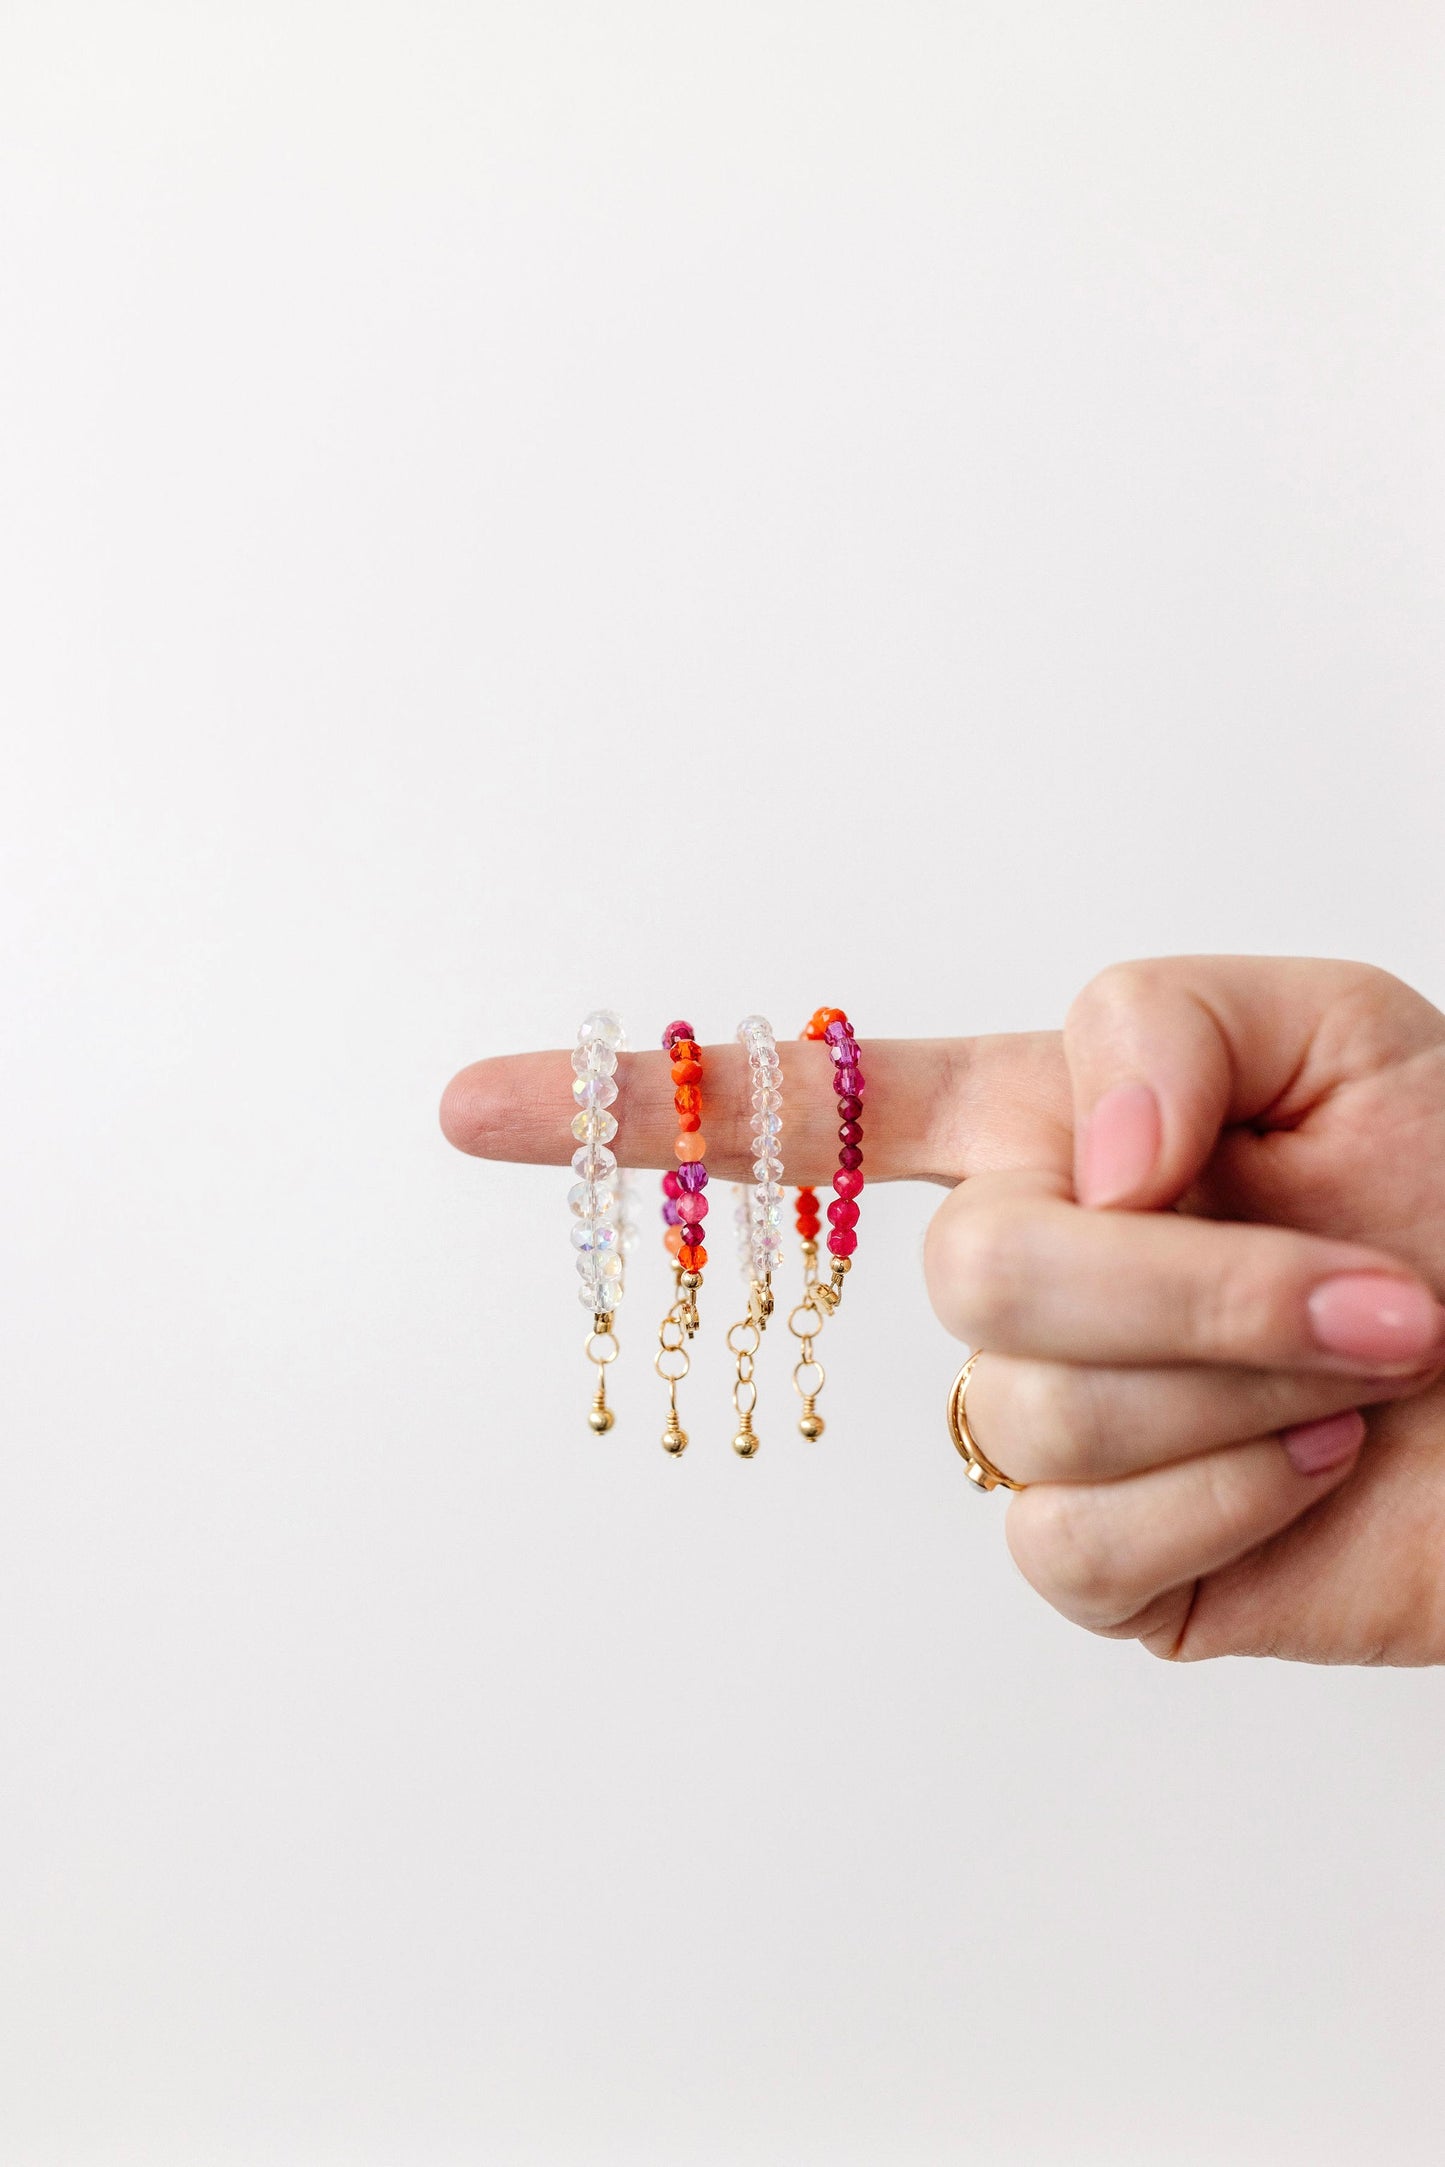 Prism Bracelet (6MM beads)